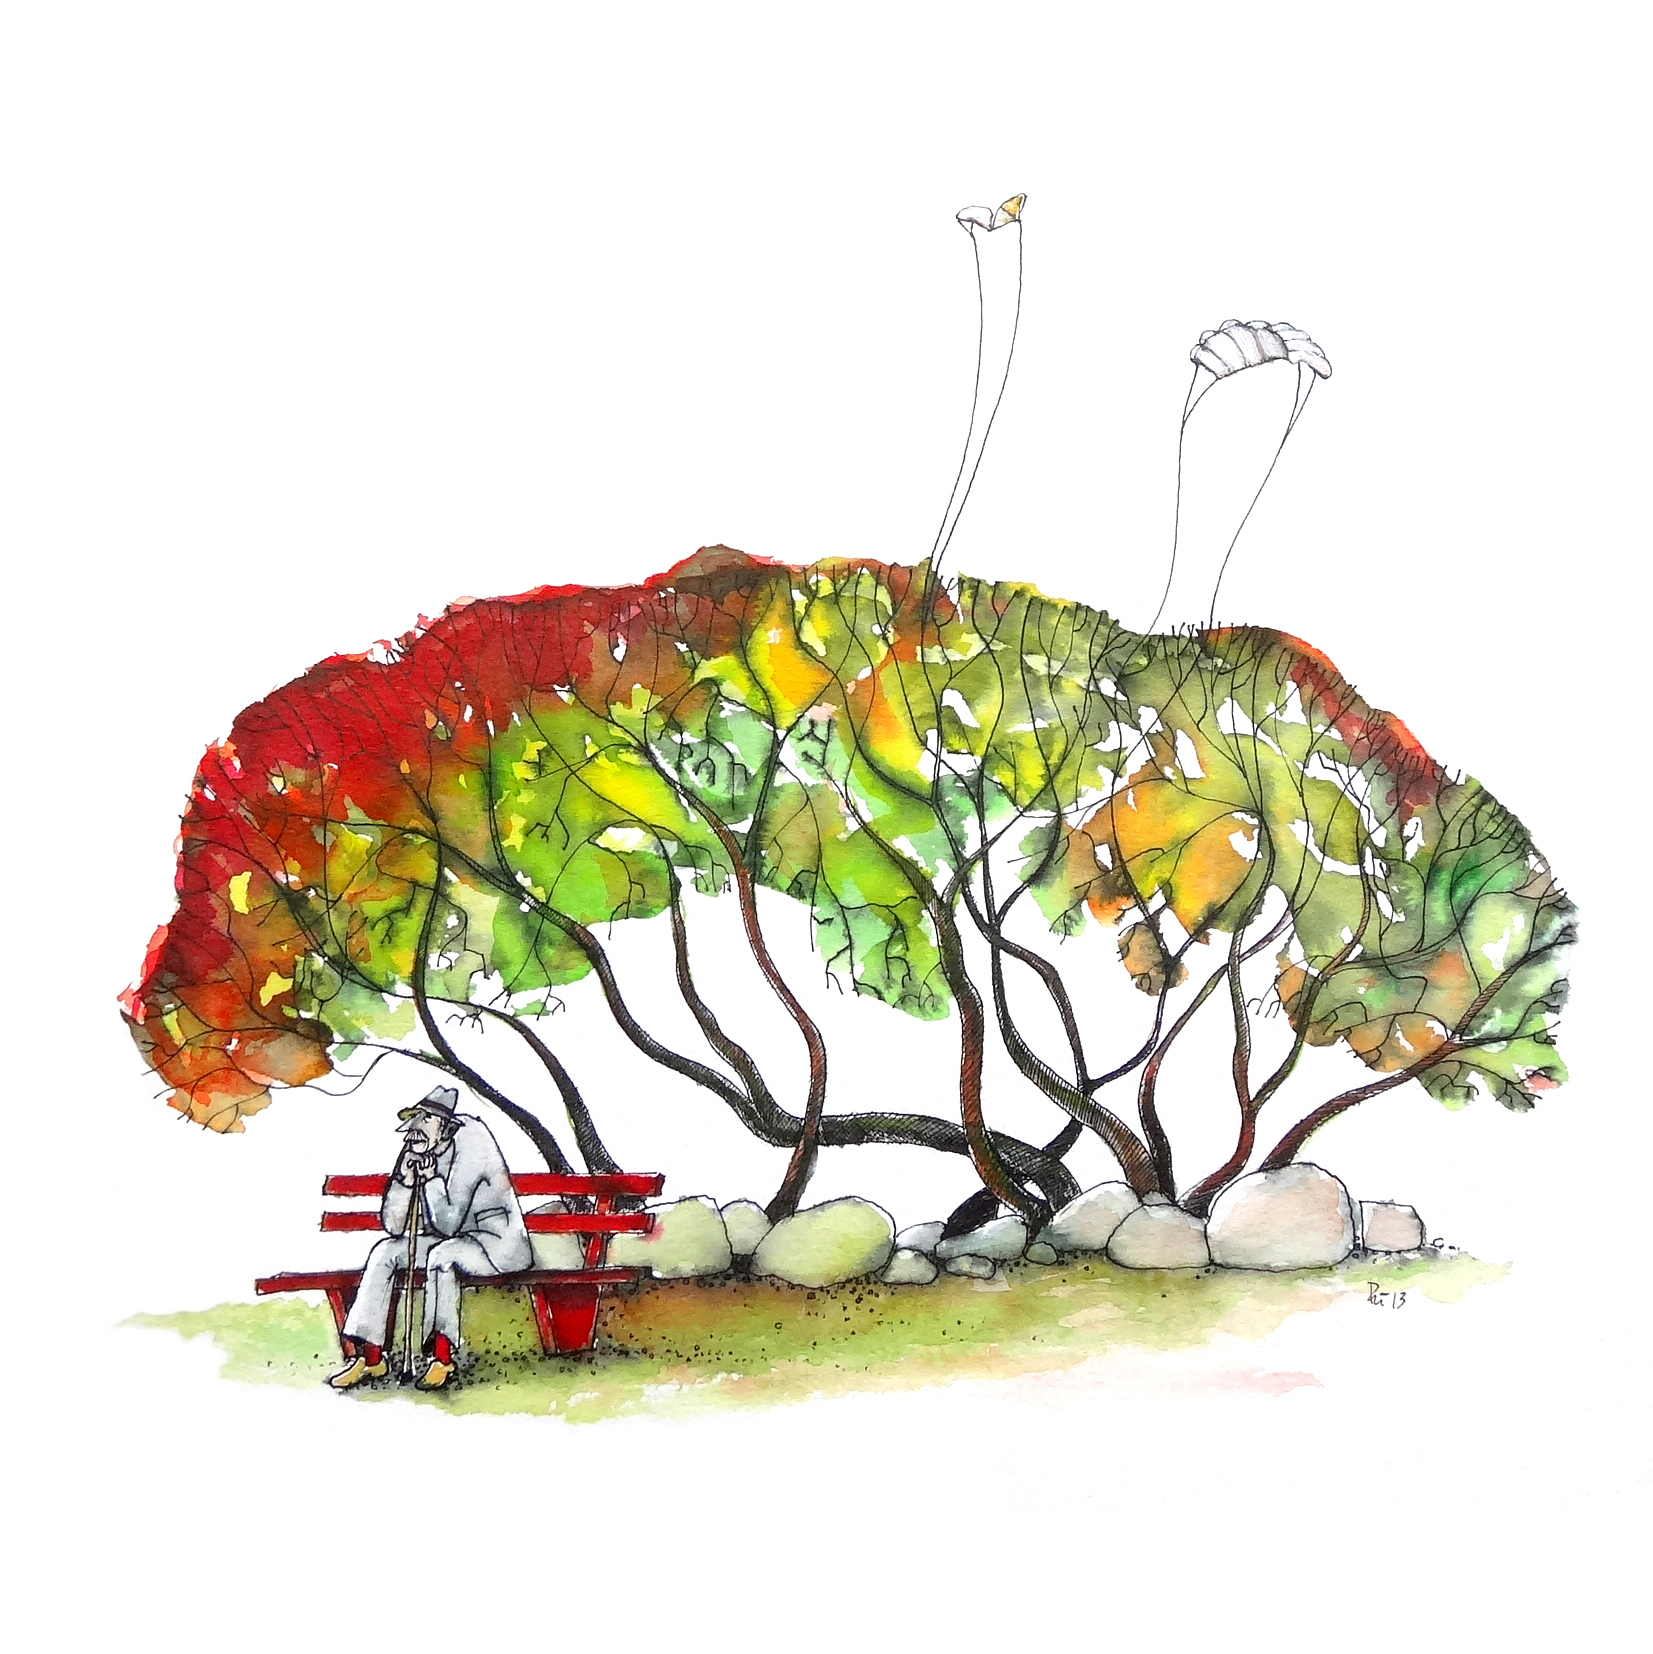 Aquarell, dass einen alten Mann auf einer Bank sitzend vor einem Baum, mit Blättern in Herbstfarben, zeigt